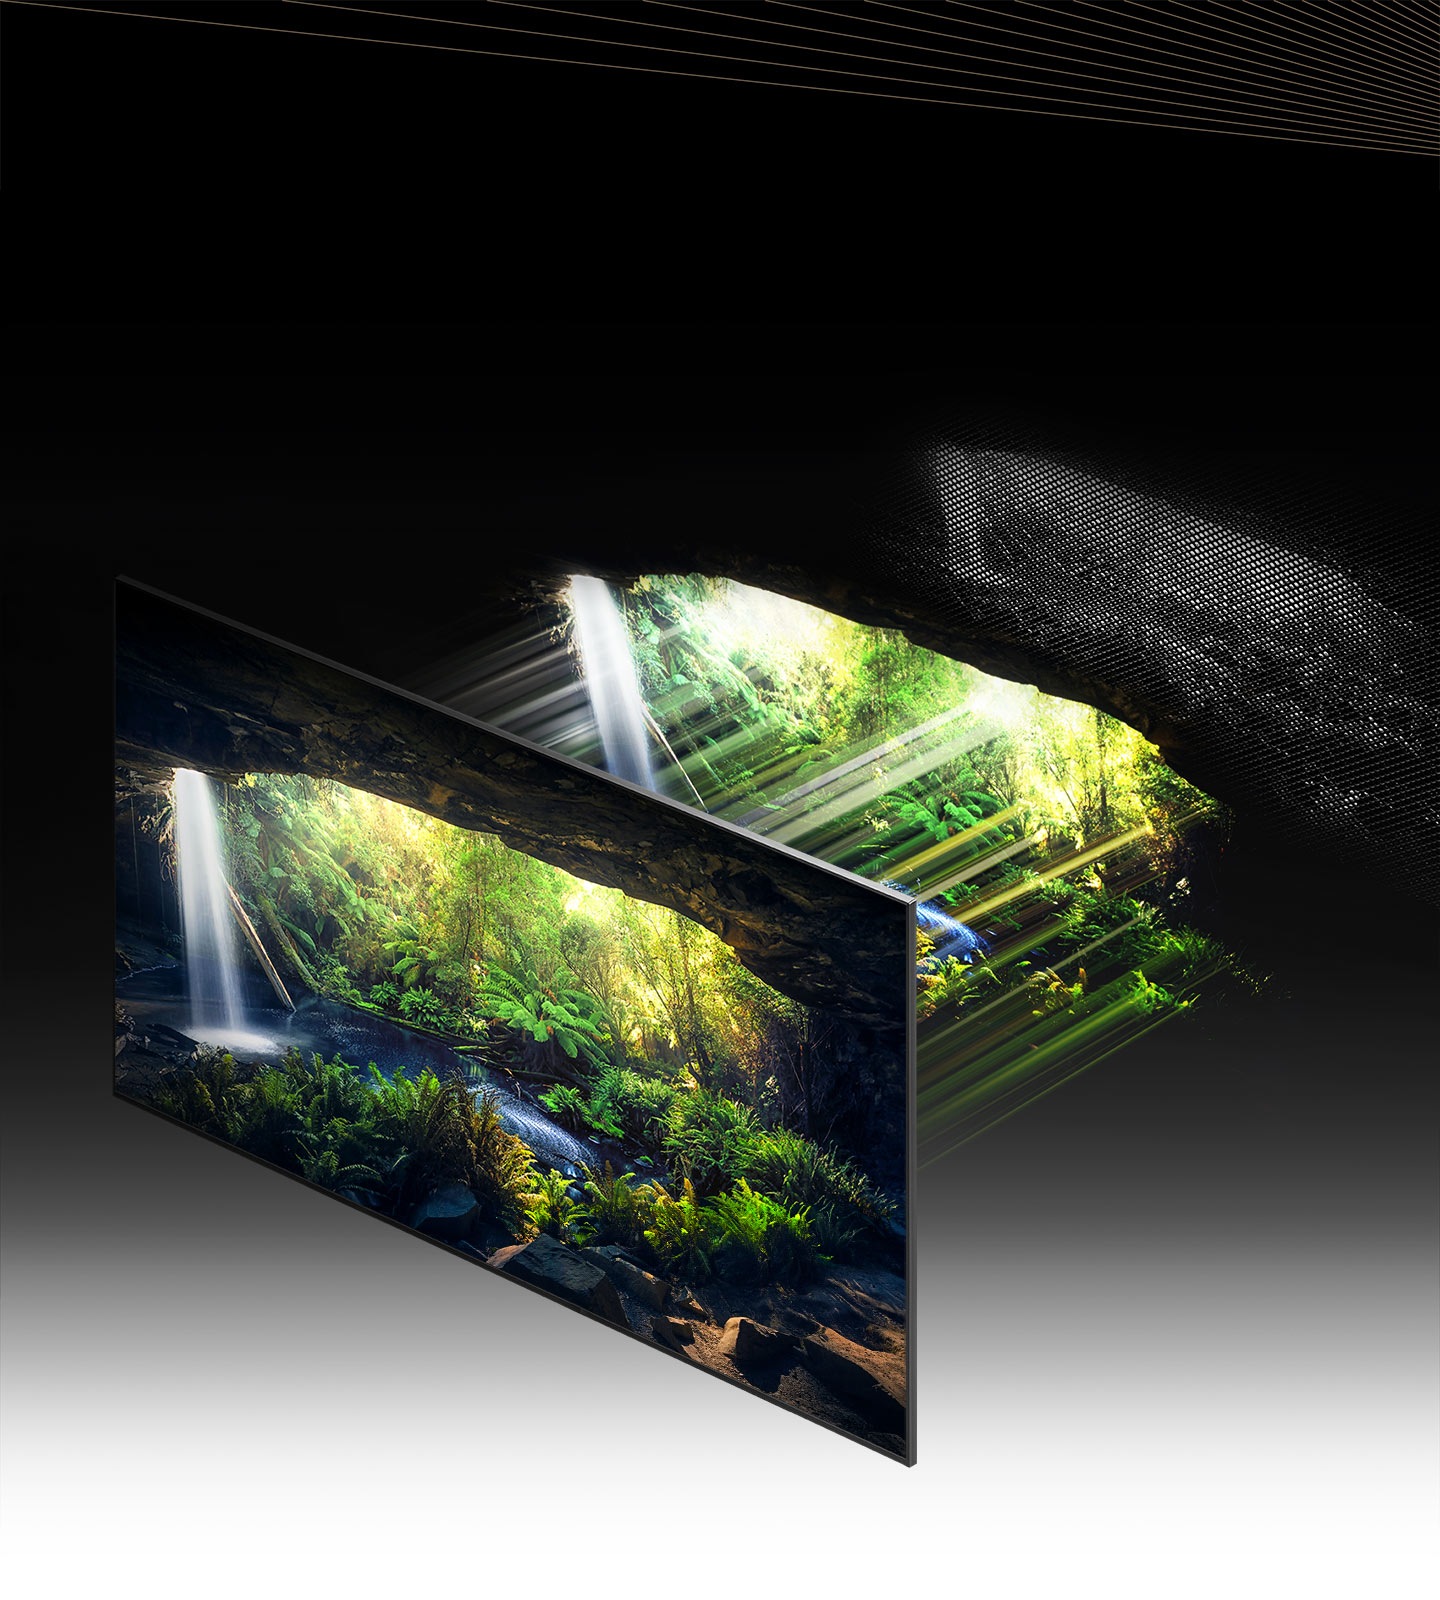 Skozi Quantum Mini LED in mikro plast je čudovit gozdni zaslon, viden iz notranjosti jame, podrobno prikazan na svetlih in temnih območjih, kar zelo jasno prikazuje.